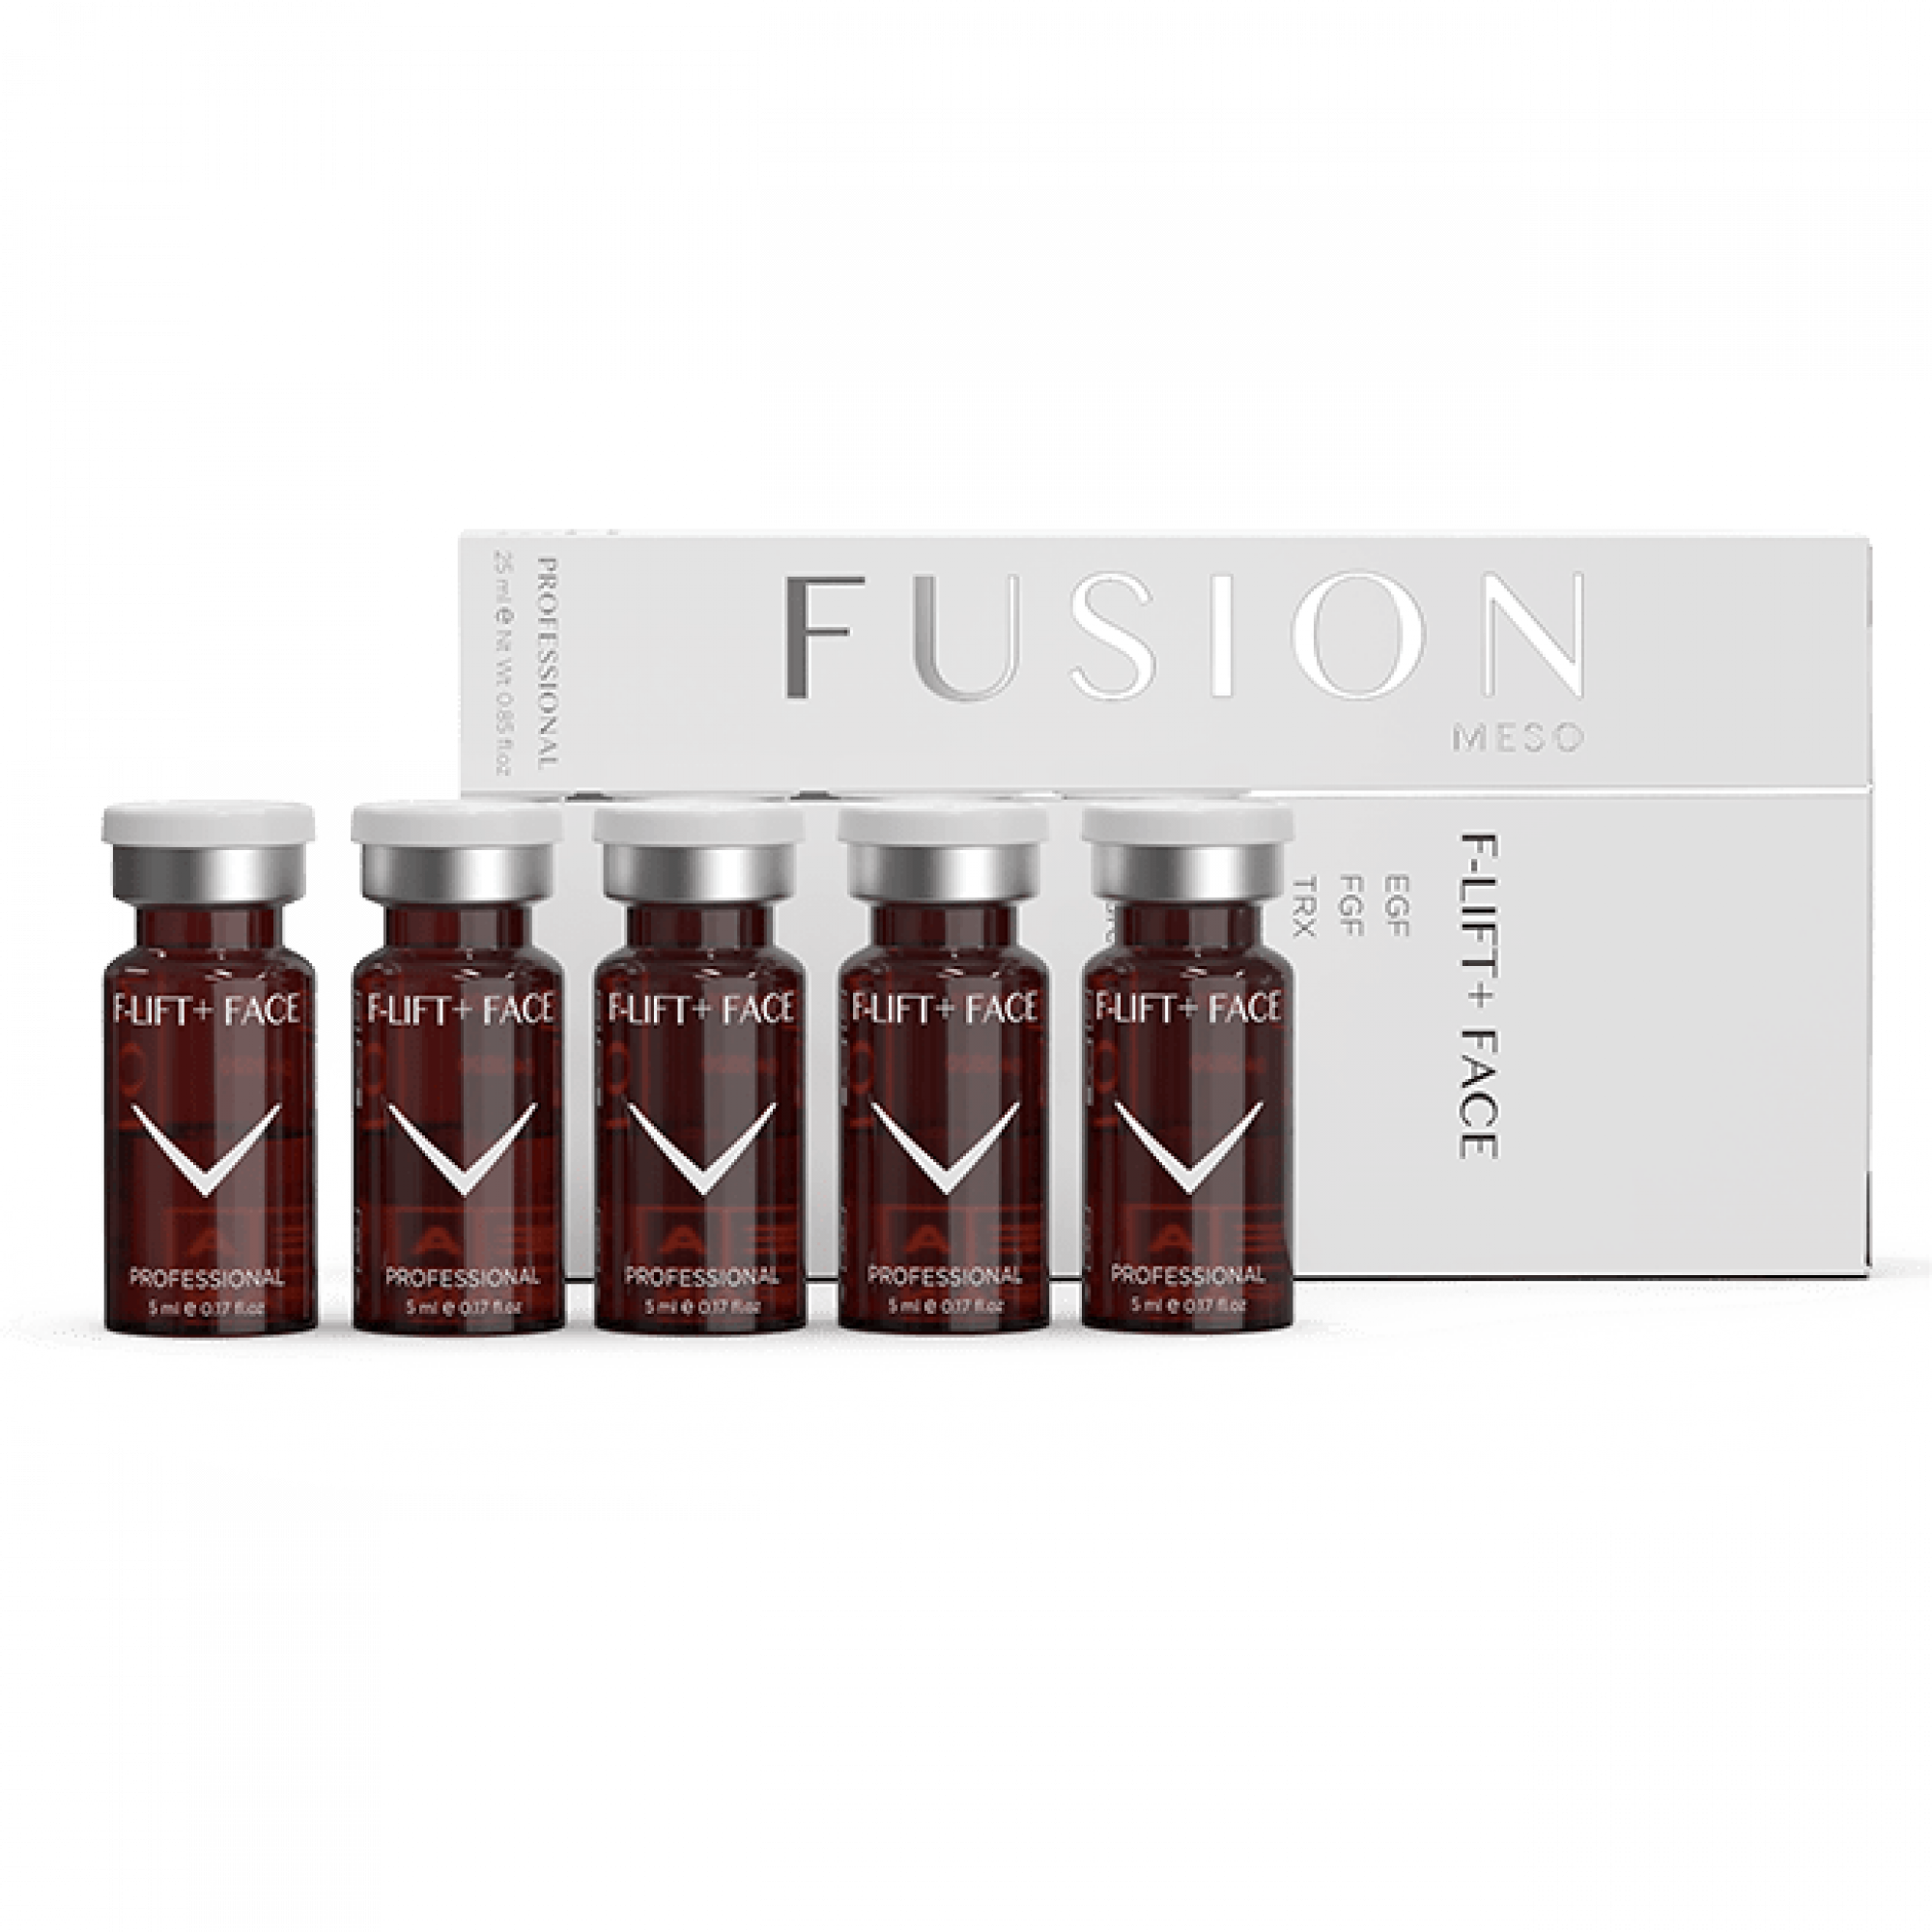 Fusion Meso Vials F-LIFT +FACE 5x5 ml